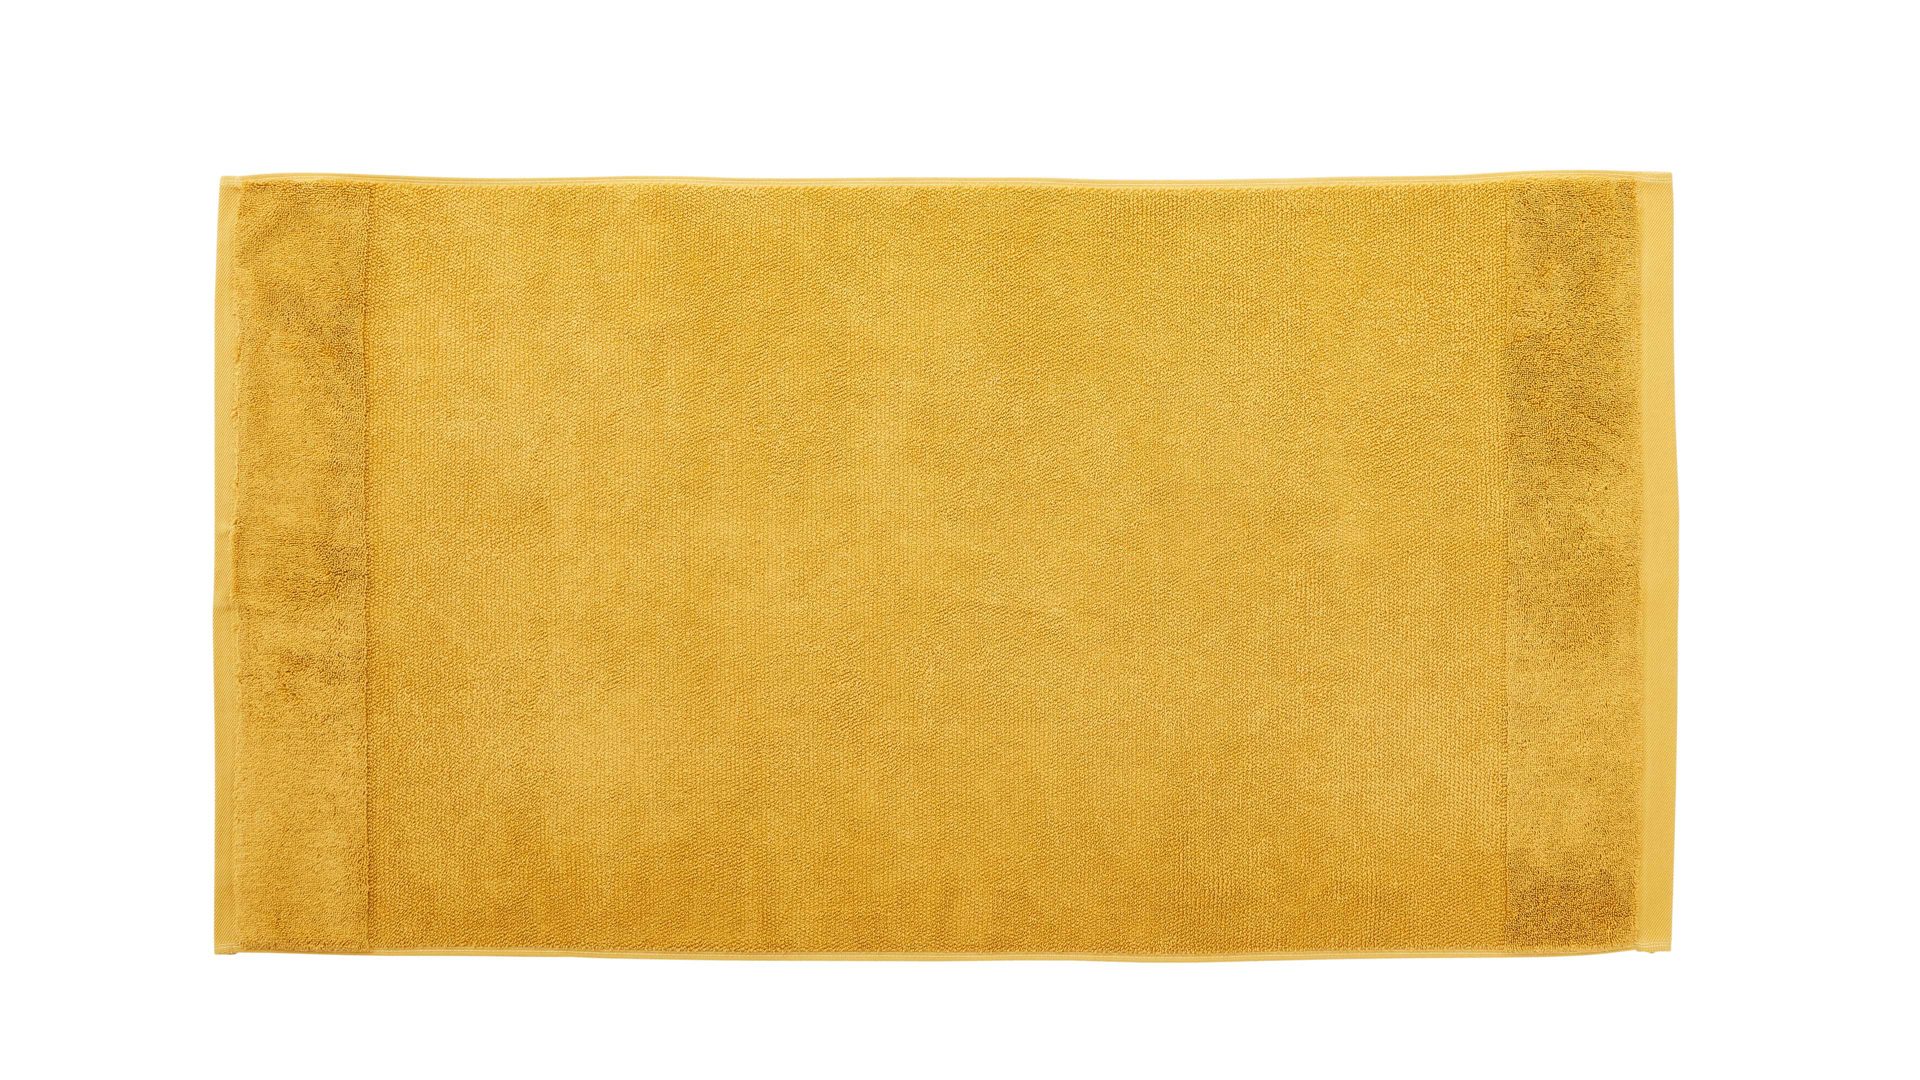 Handtuch Interliving aus Naturfaser in Gelb Interliving Handtuch Serie 9108 - Handtuch Gold – ca. 60 x 110 cm